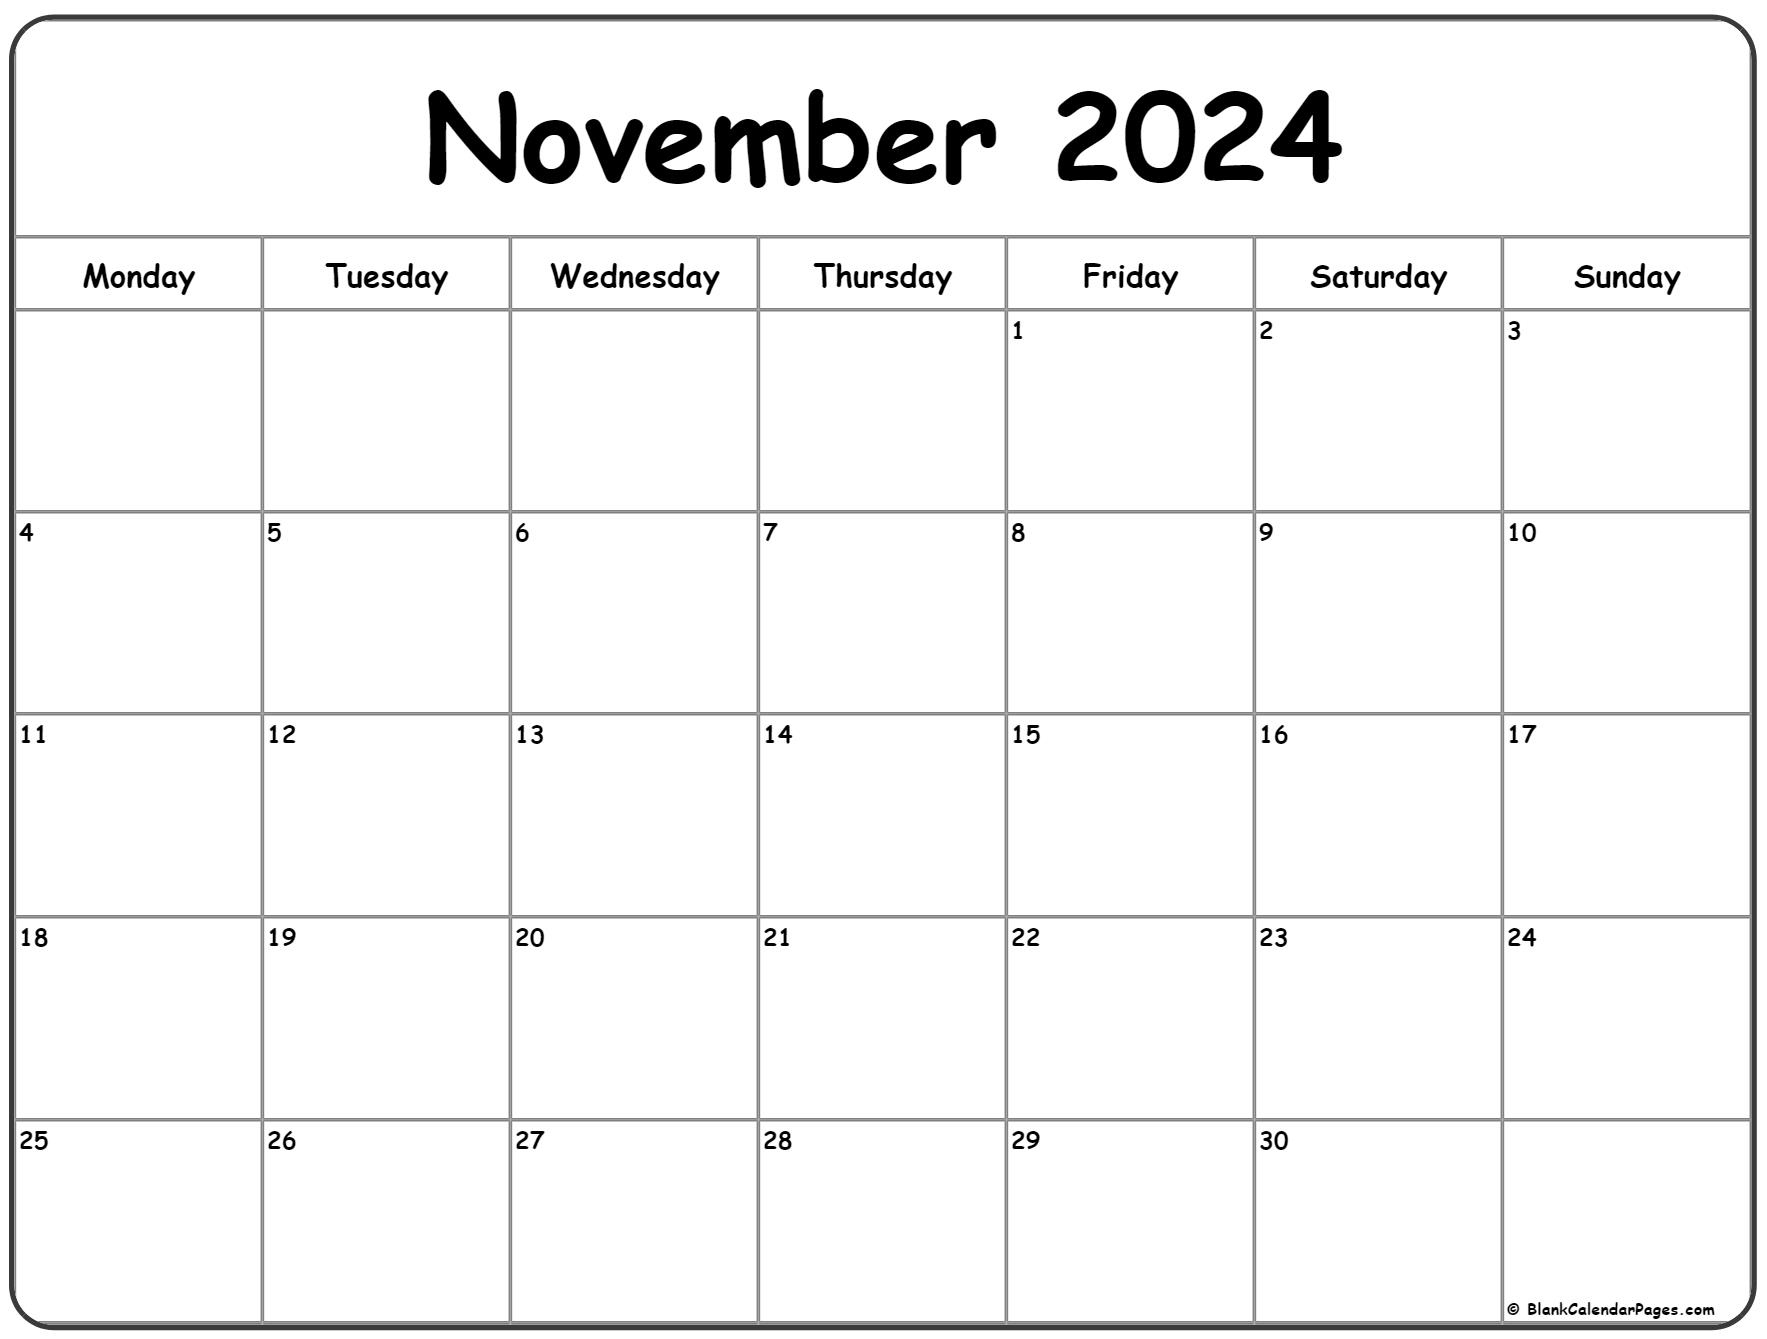 November 2024 Monday Calendar | Monday To Sunday regarding Free Printable Calendar 2024 November December